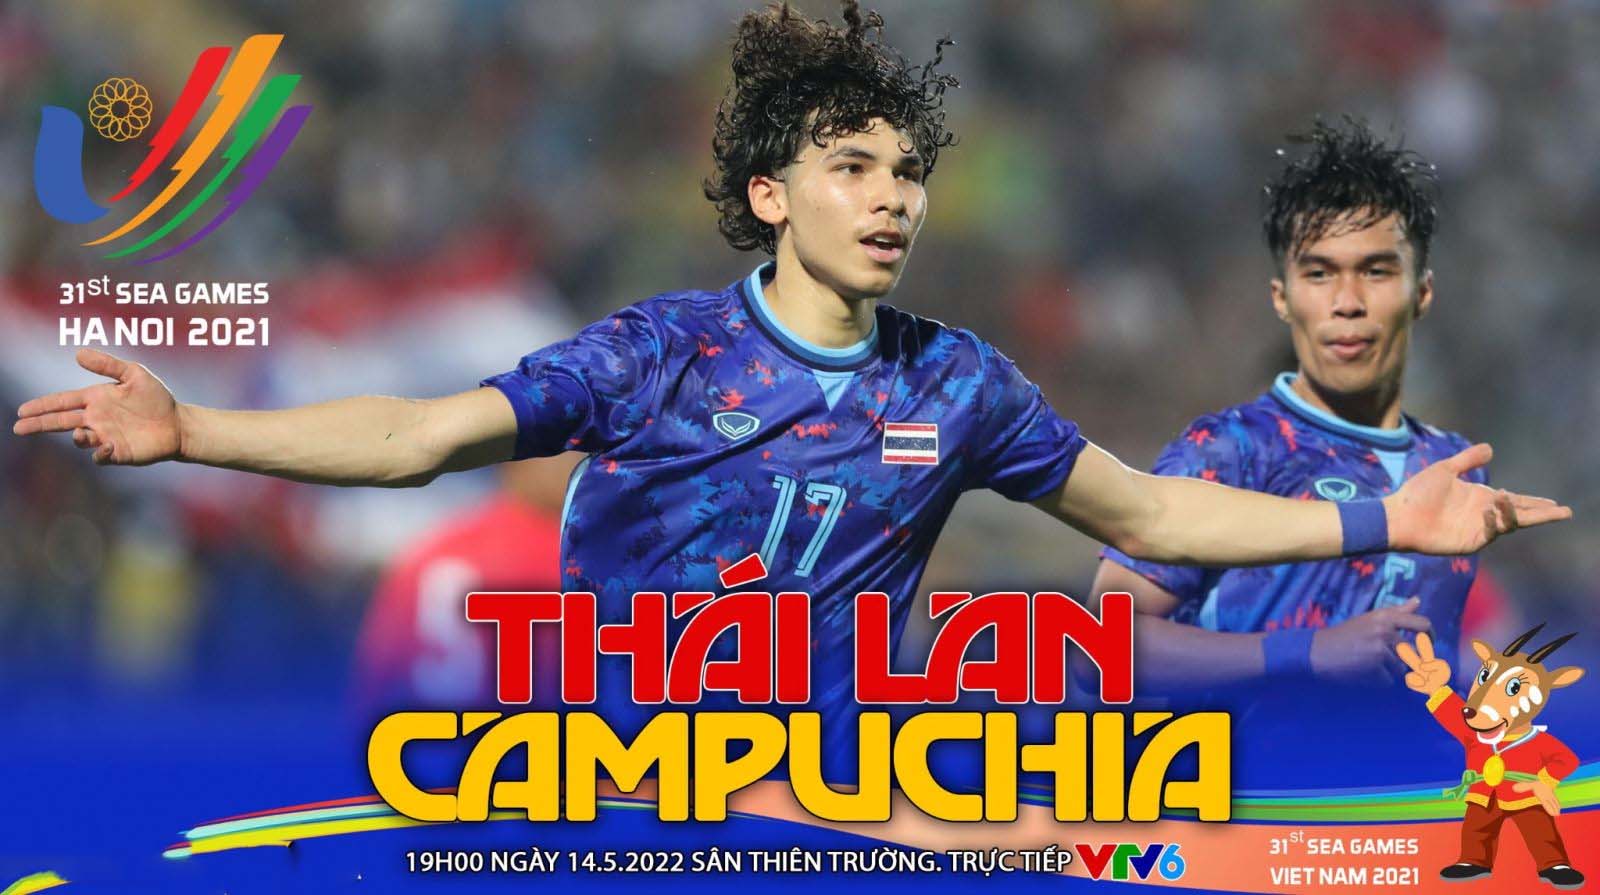 Trực tiếp bóng đá U23 Thái Lan vs U23 Campuchia: Link xem trực tiếp SEA Games 31 hôm nay VTV6 